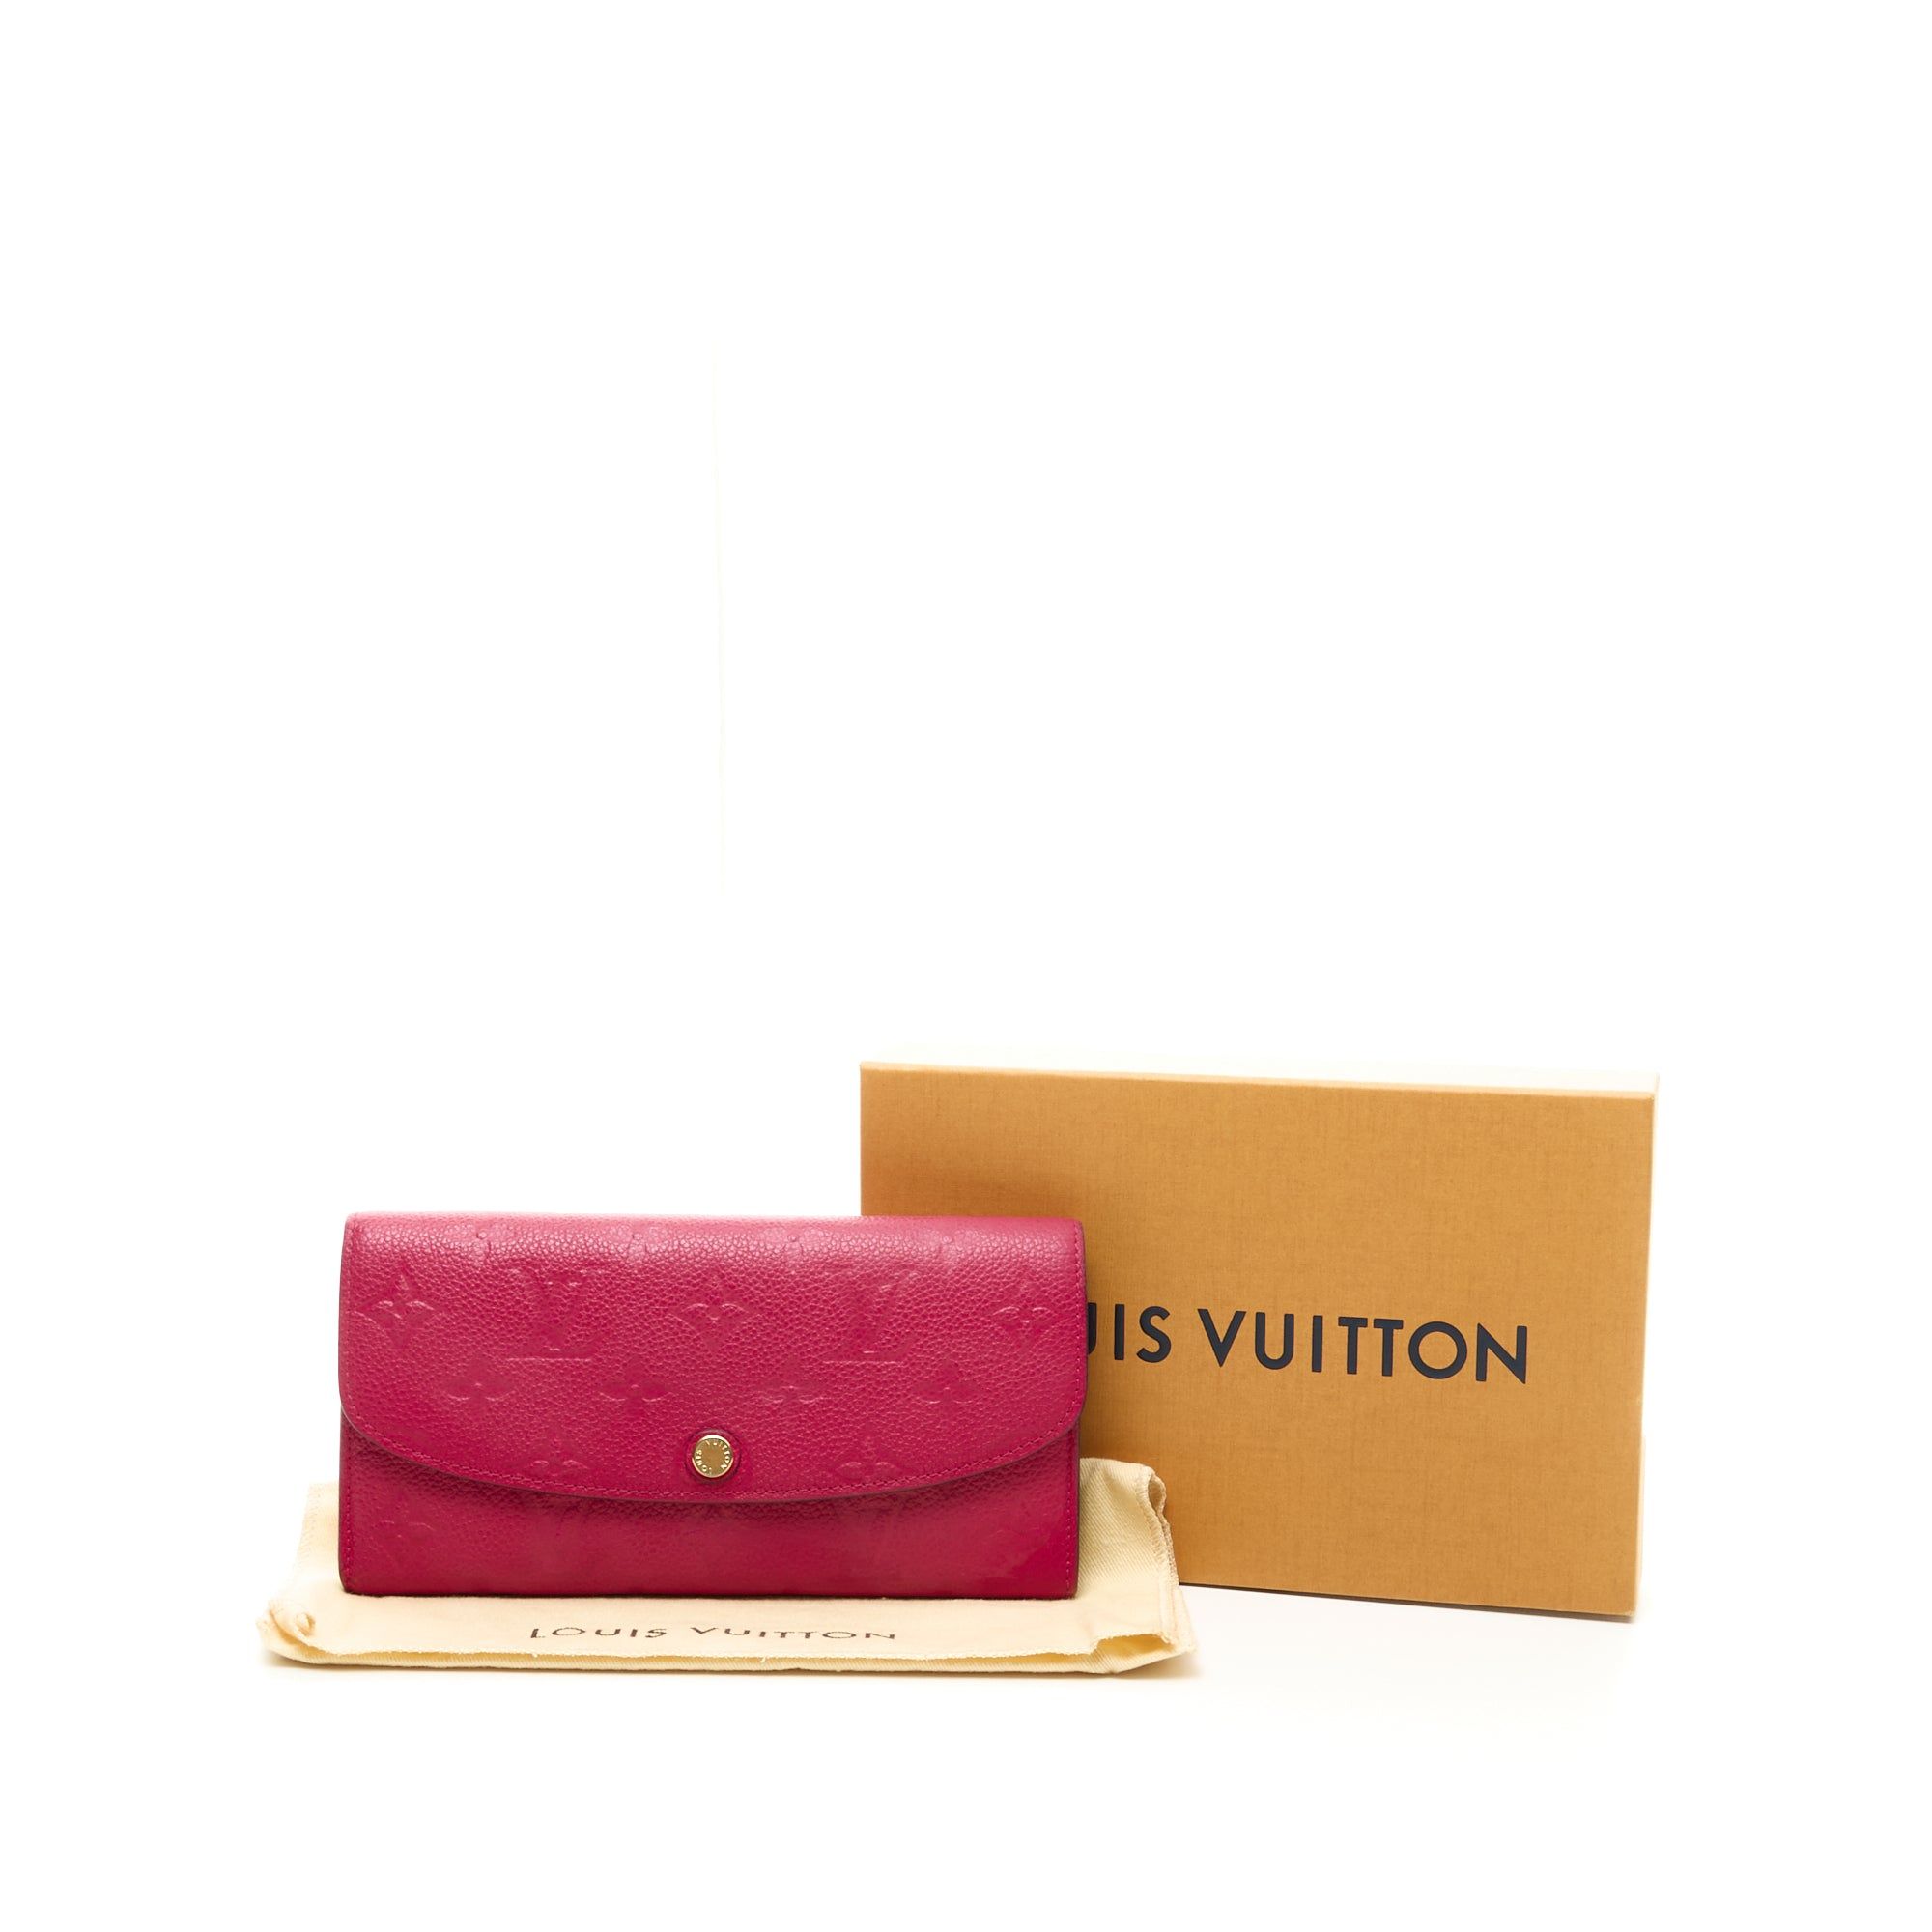 Louis Vuitton Emilie Wallet 342603